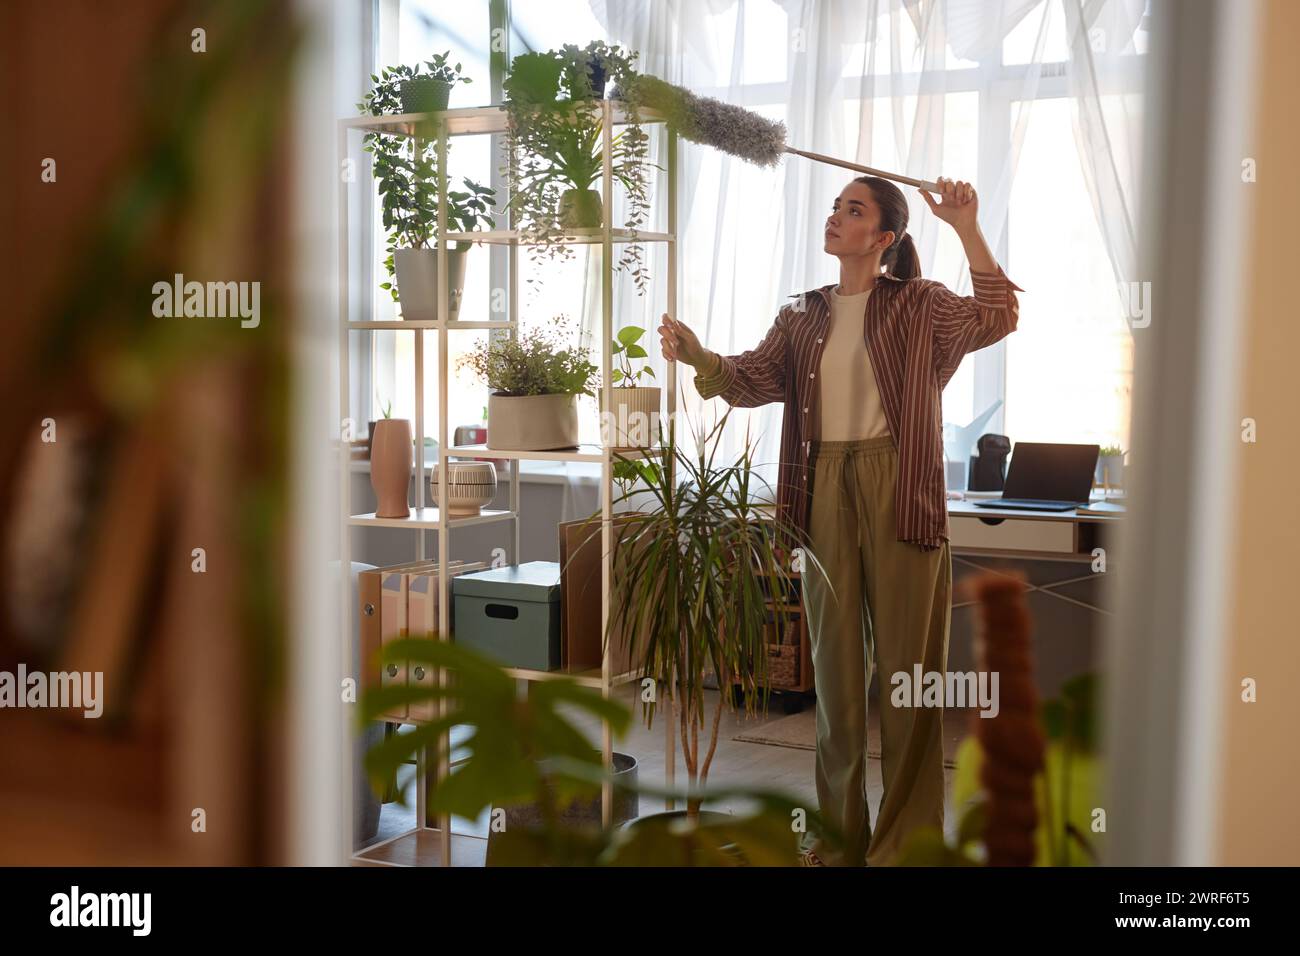 Spiegelreflexion einer jungen Frau, die hohe Regale mit lebenden grünen Pflanzen staubt und gleichzeitig den Kopierraum des Hauses erfrischt Stockfoto